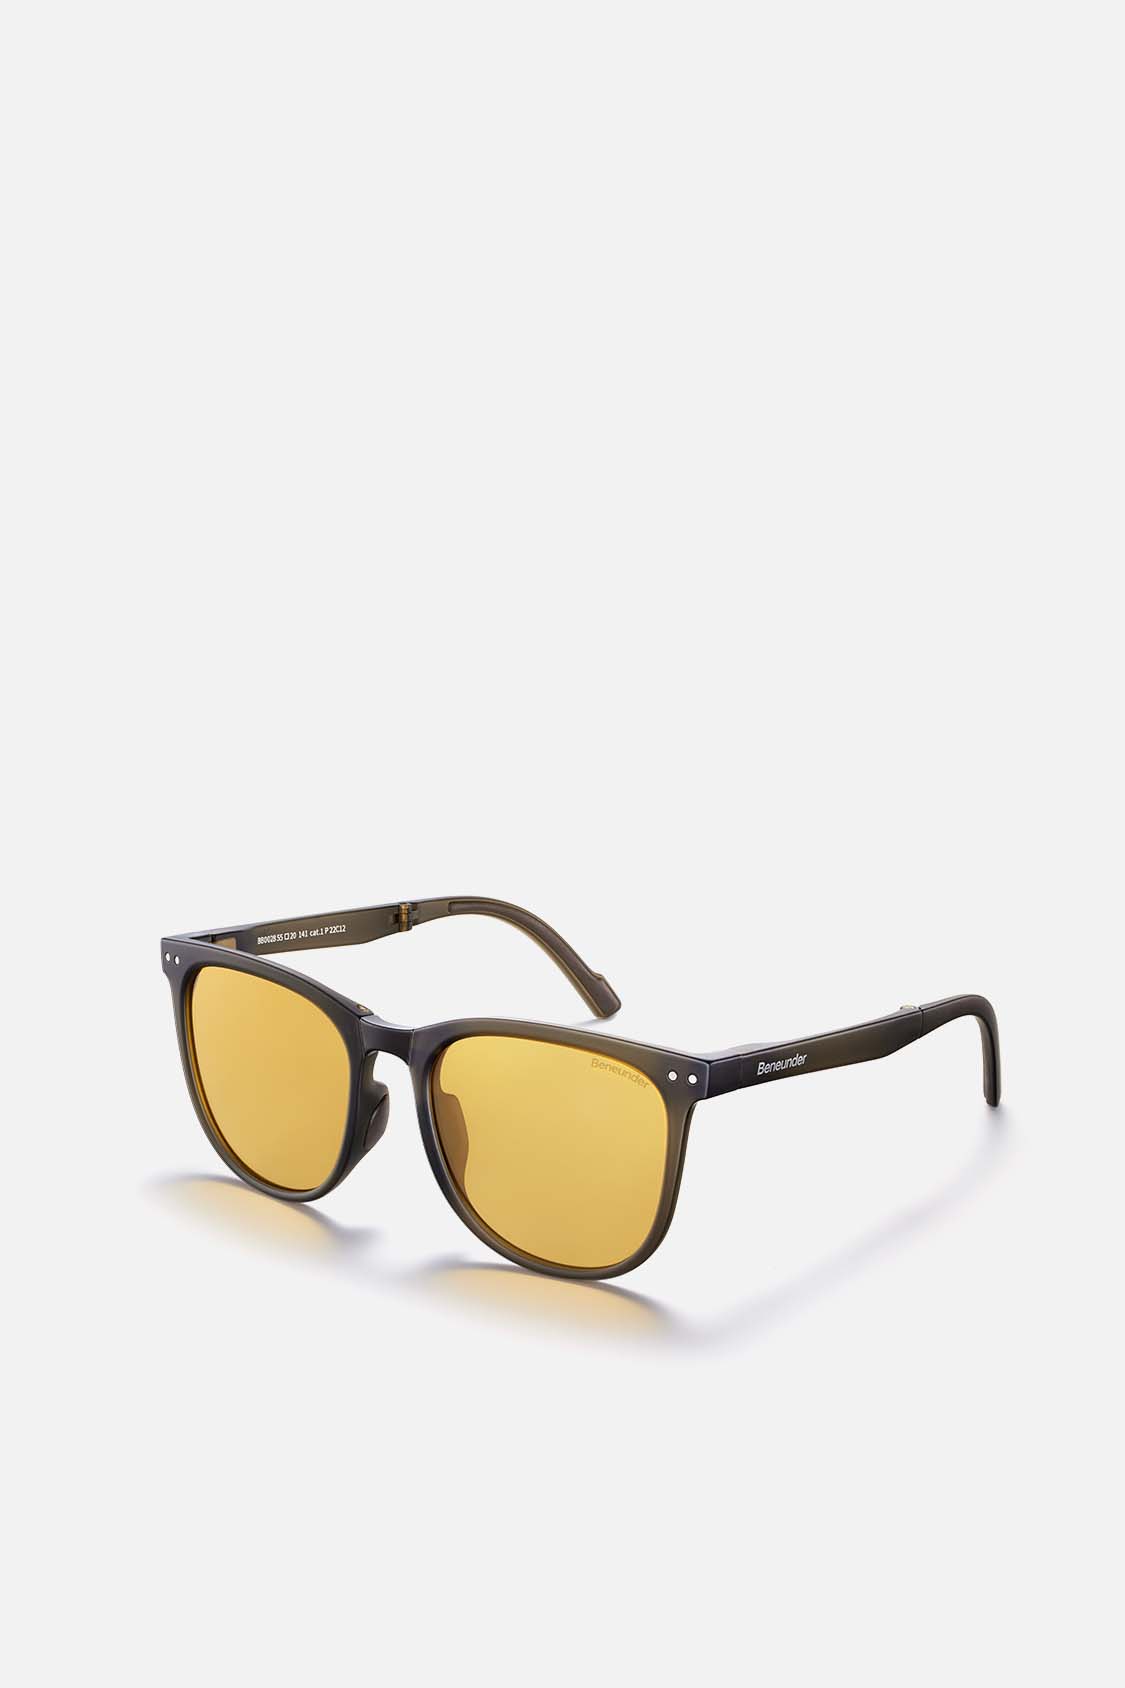 Black Classic Sunglasses